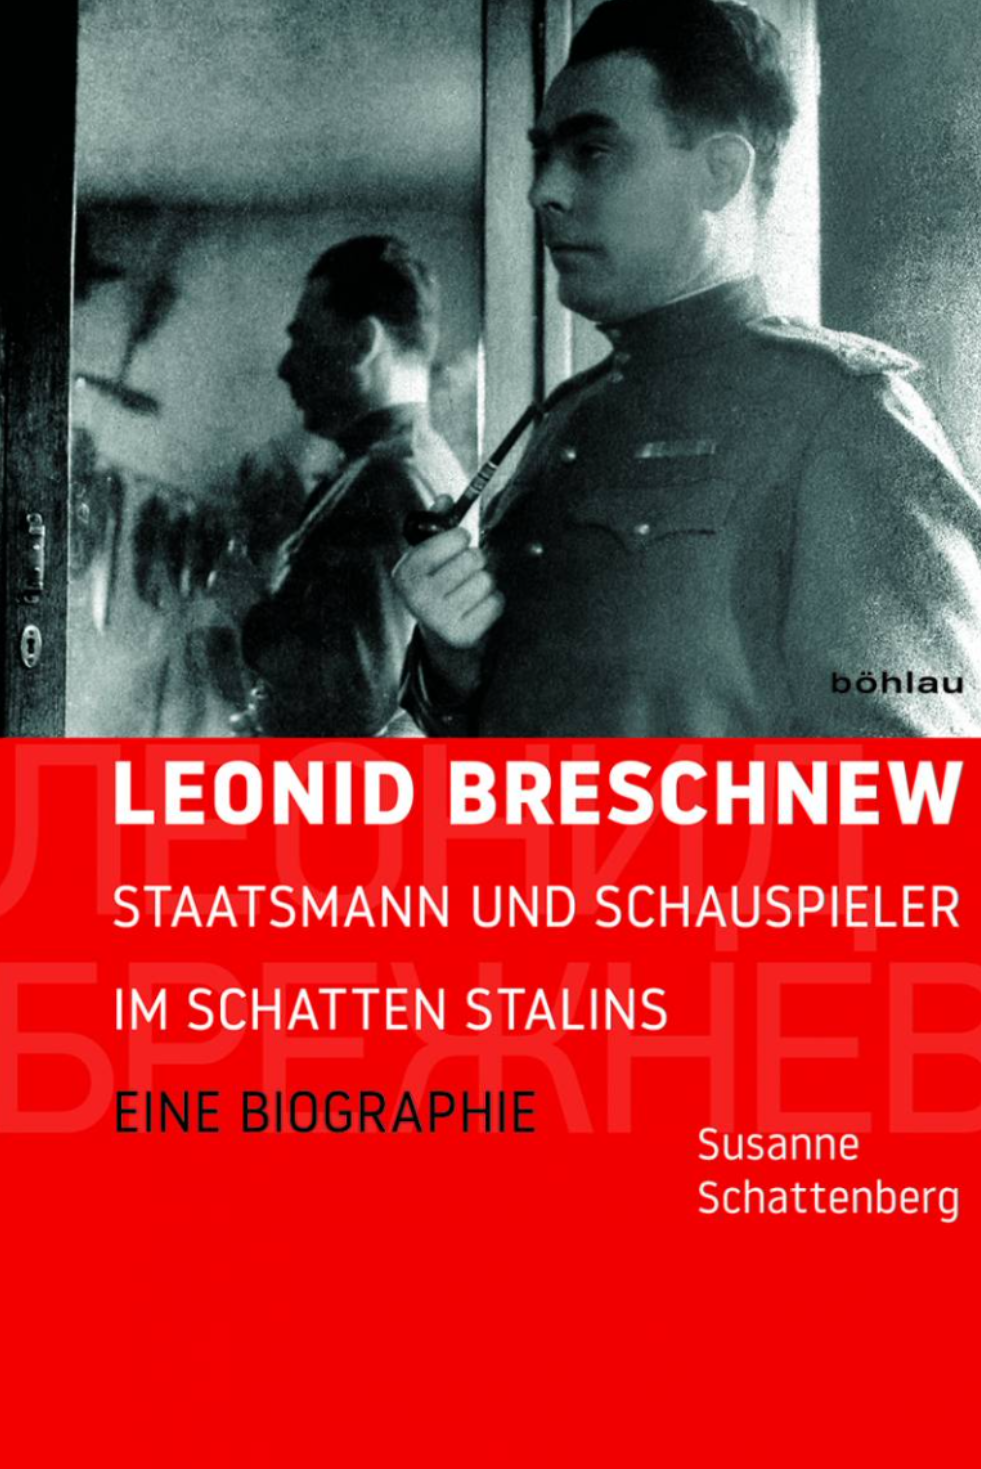 cover "Leonid Breschnew Staatsmann und Schauspieler im Schatten Stalins. Eine Biographie"